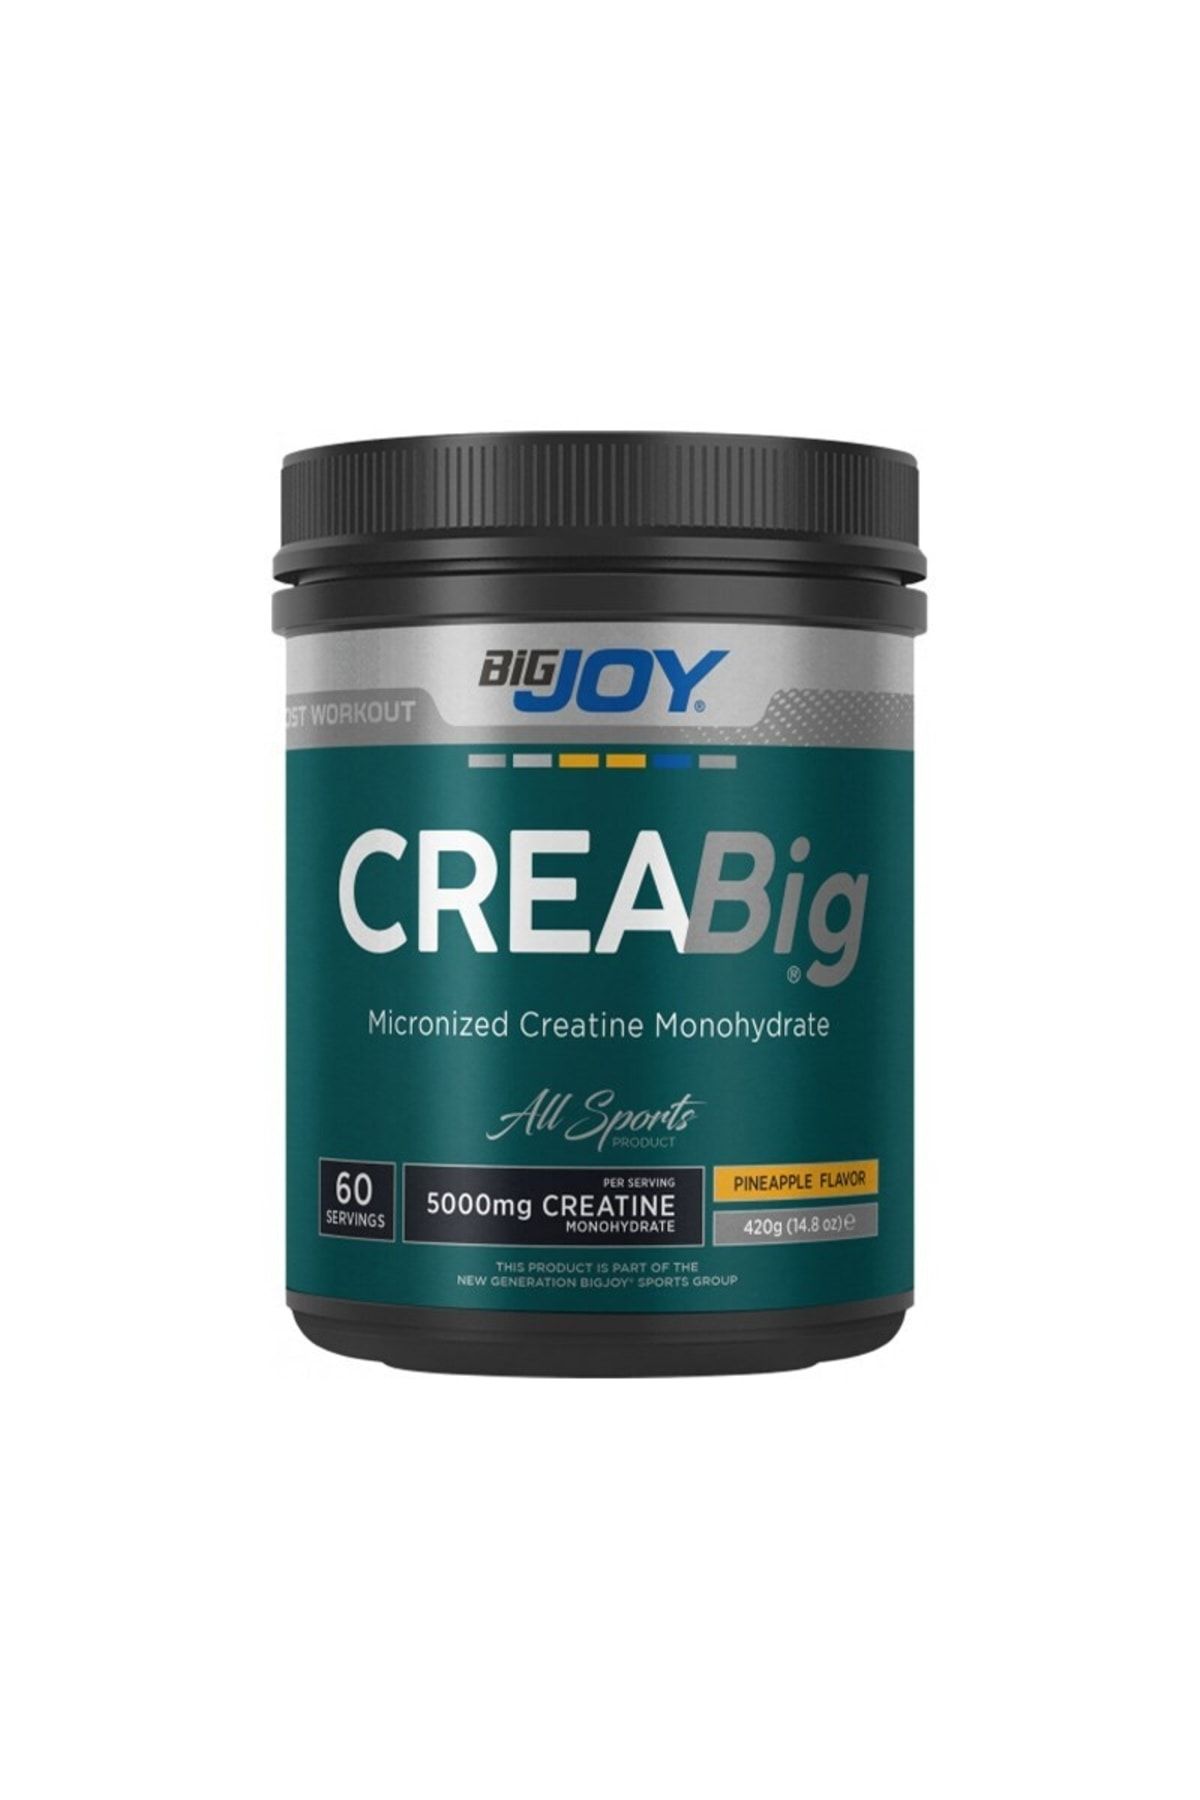 Big Joy Crea Big Micronized Creatine Powder 420 gr